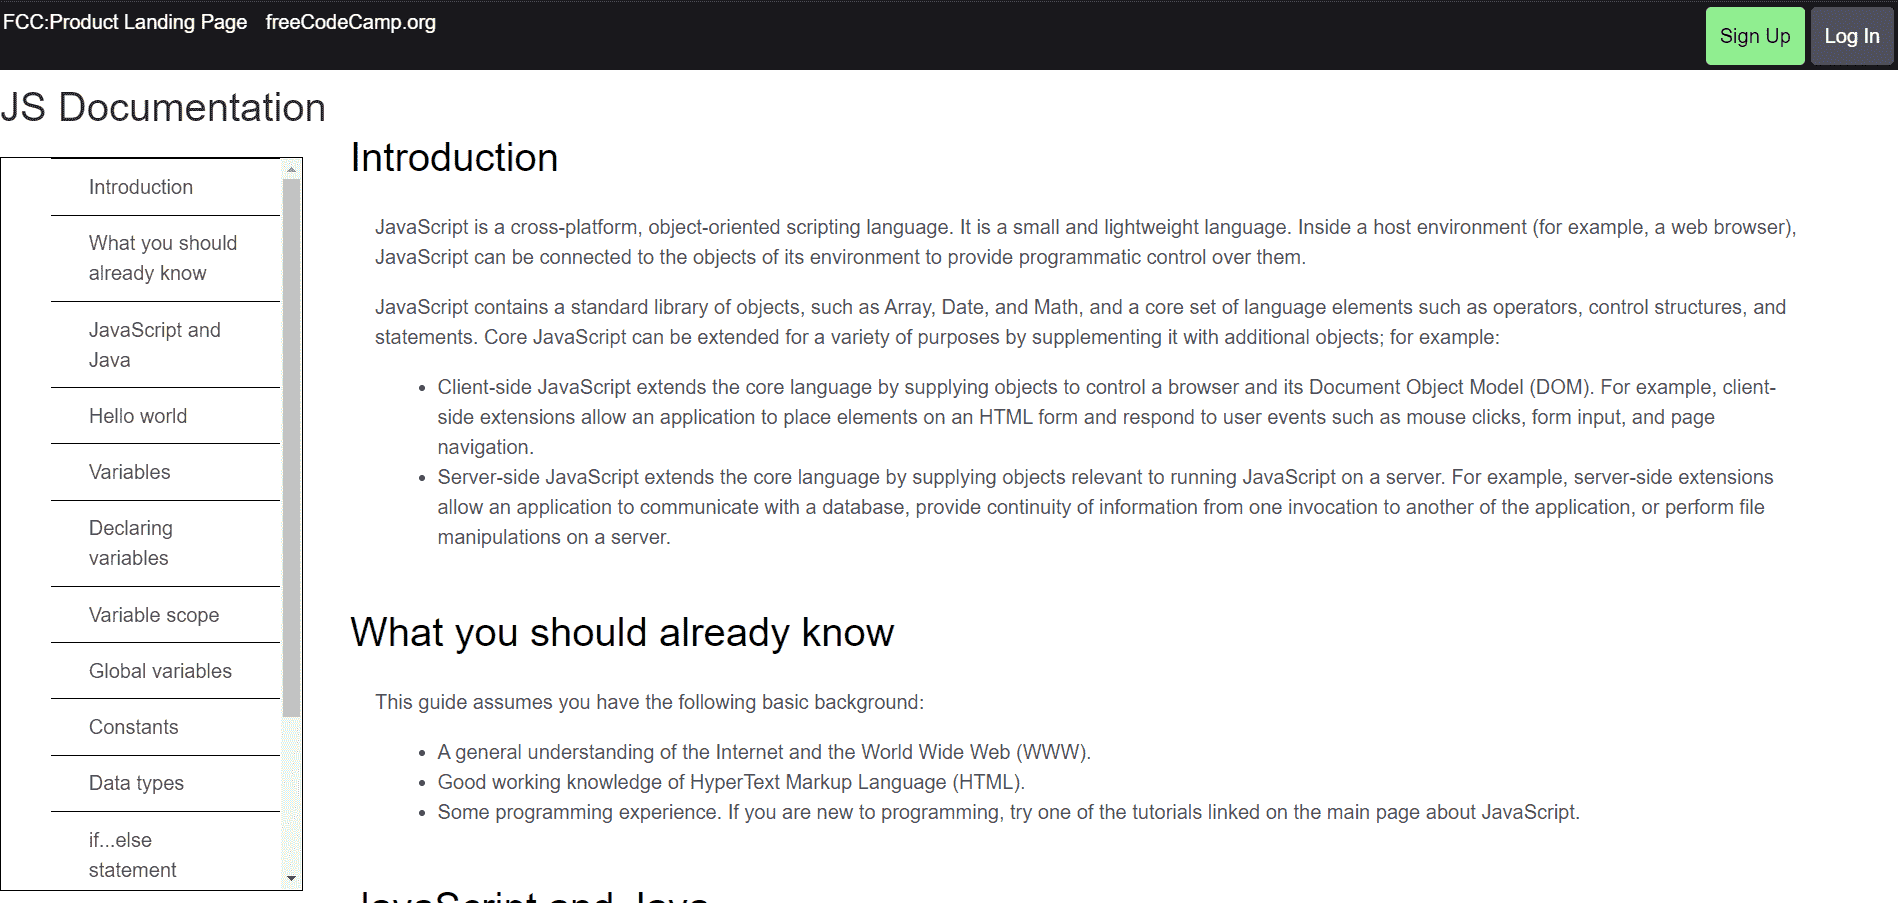 js-documentation-page